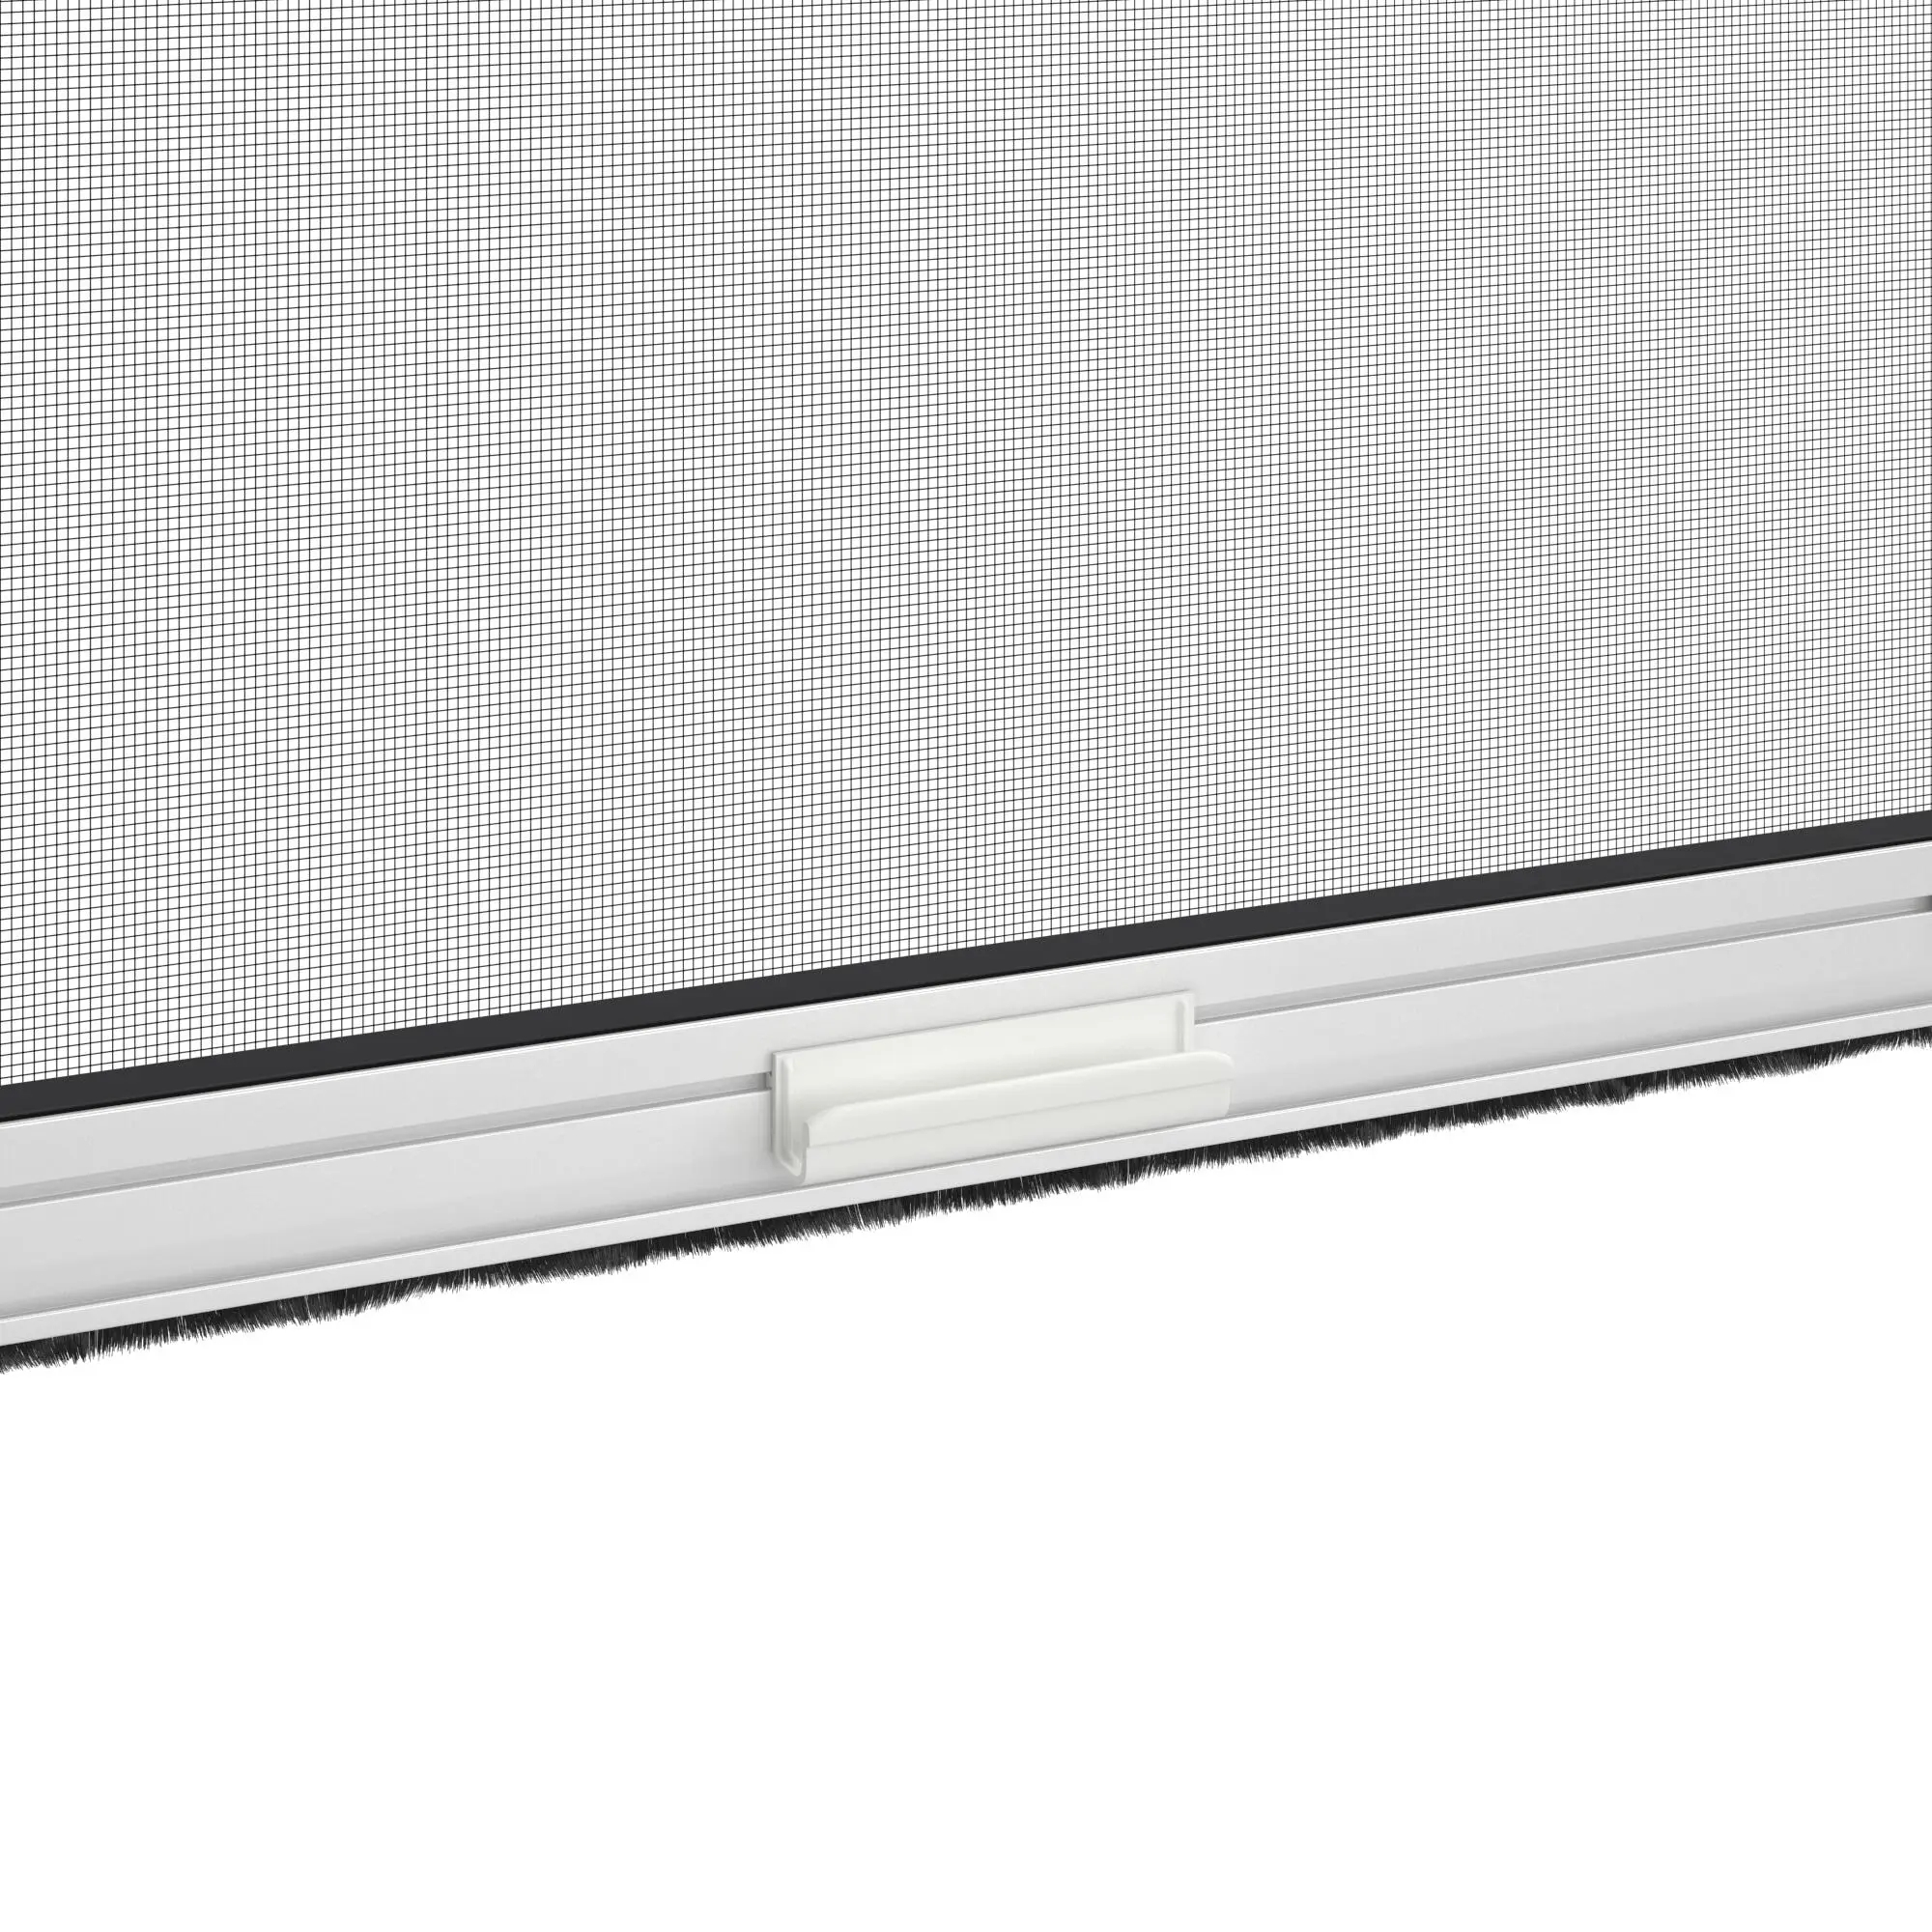 Zanzariera avvolgibile ARTENS per finestra L 100 x H 160 cm bianco - 5